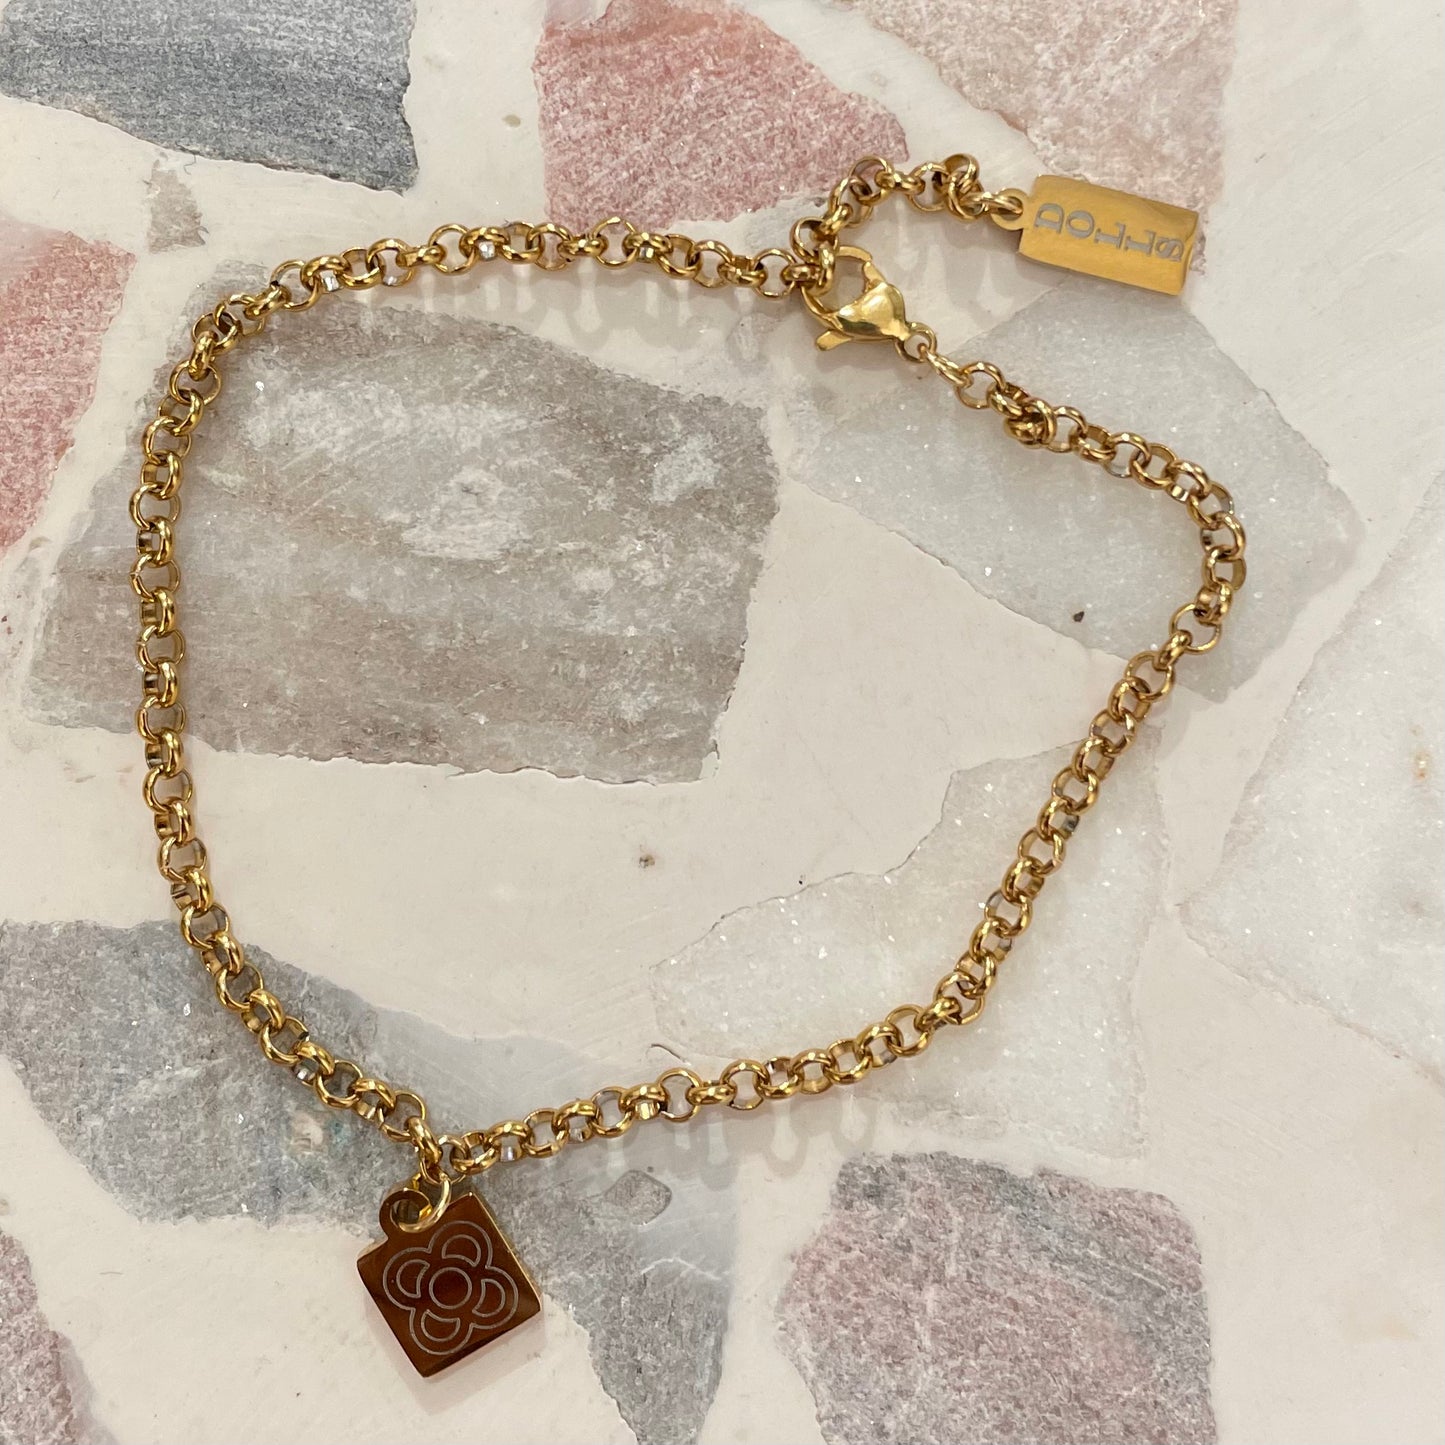 Golden Bracelet with Bcn pendant